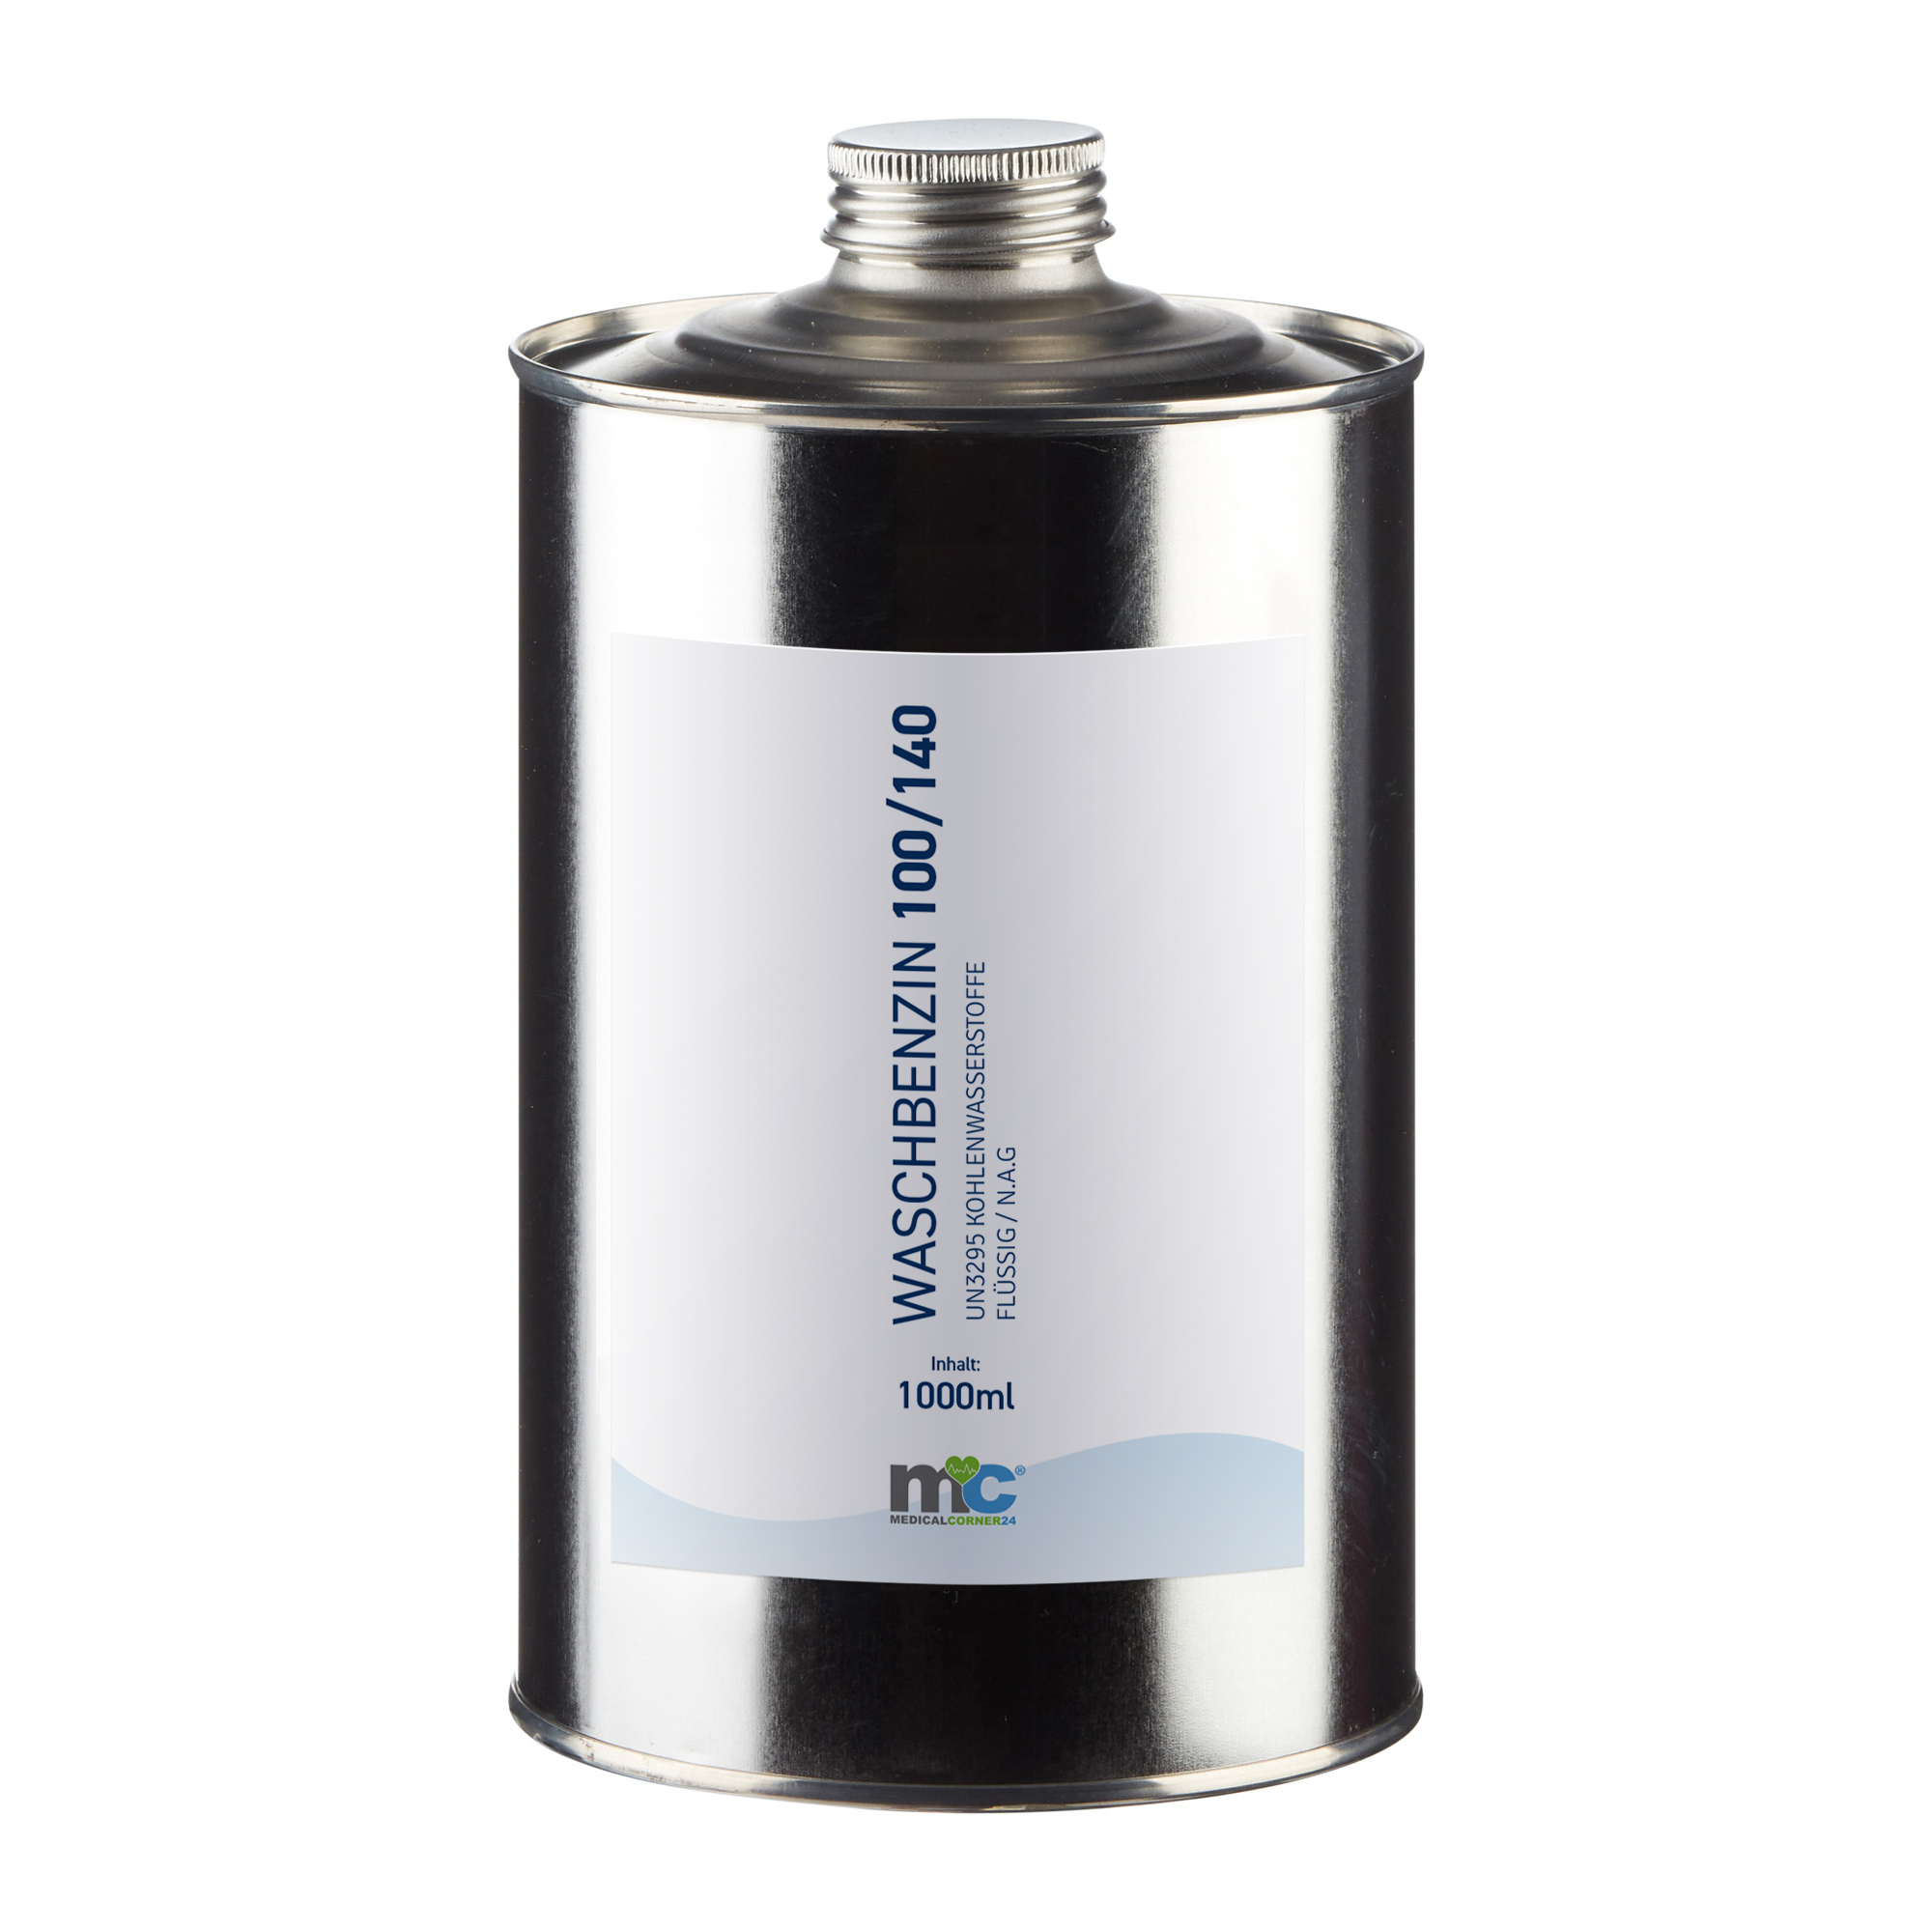 MC24 Waschbenzin 100/140, UN3295, Lösungsmittel, farblos, 1.000 ml